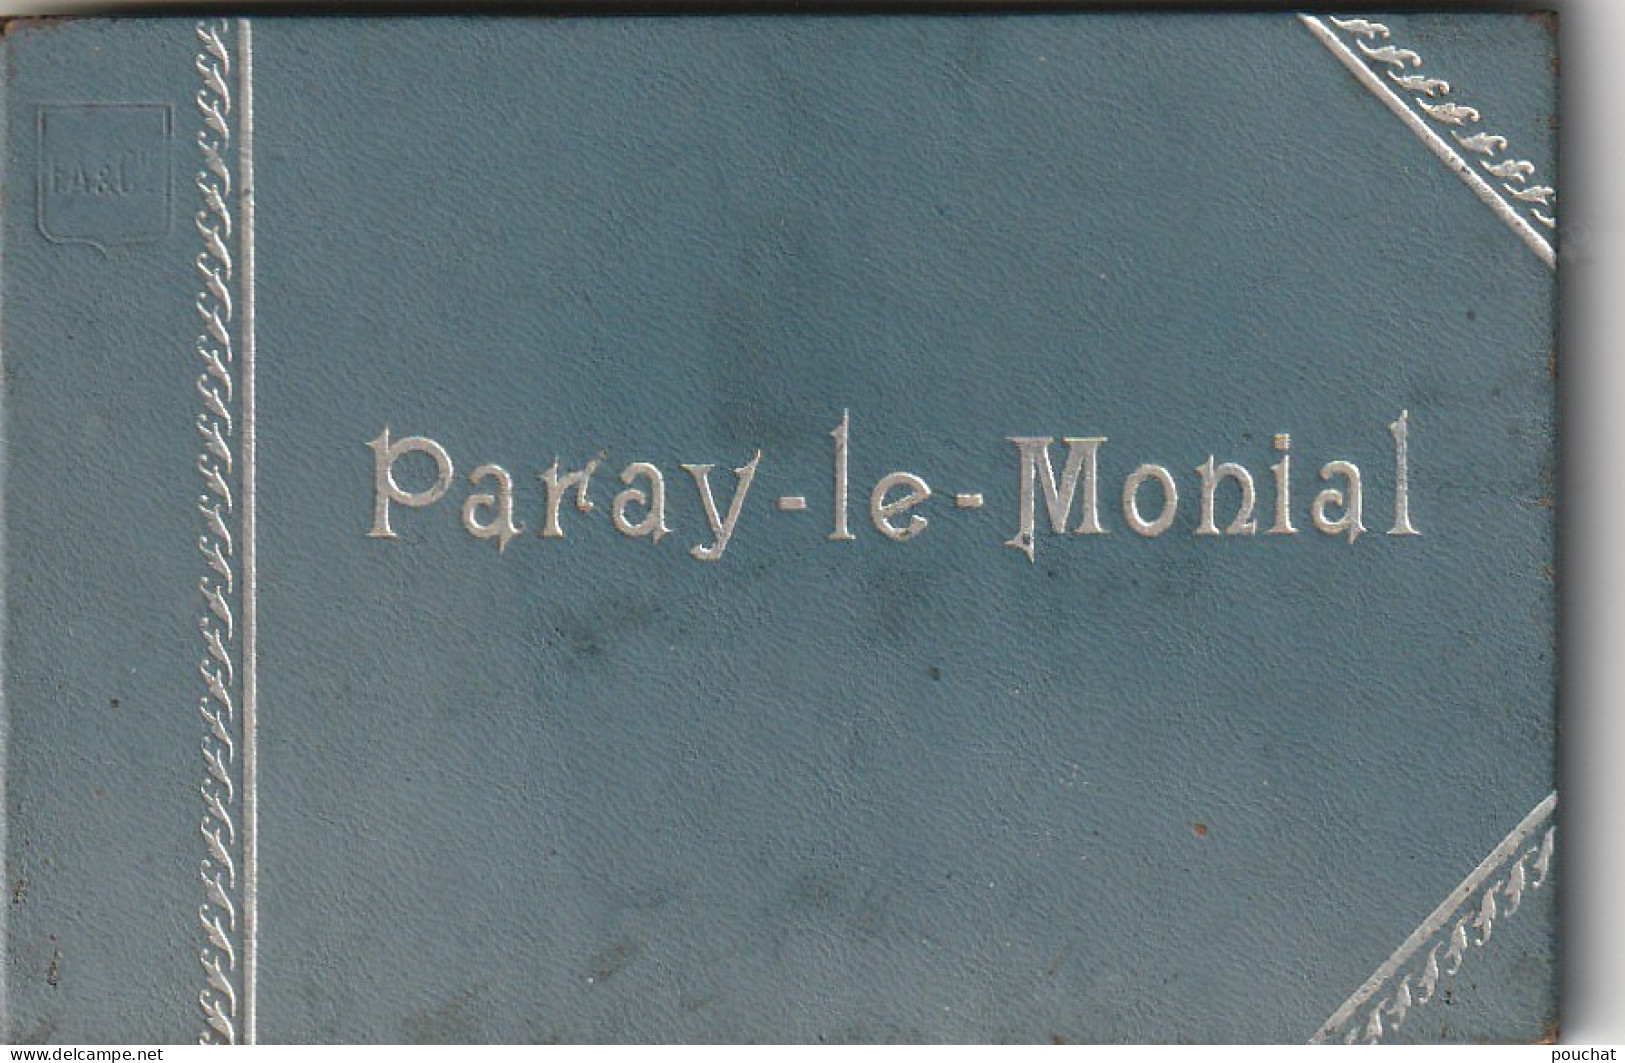 IN 11- (71) PARAY LE MONIAL - LIVRET RIGIDE DE 12 VUES (14,5x8,5) SOUS FORME DE DEPLIANT - 5 SCANS - Paray Le Monial